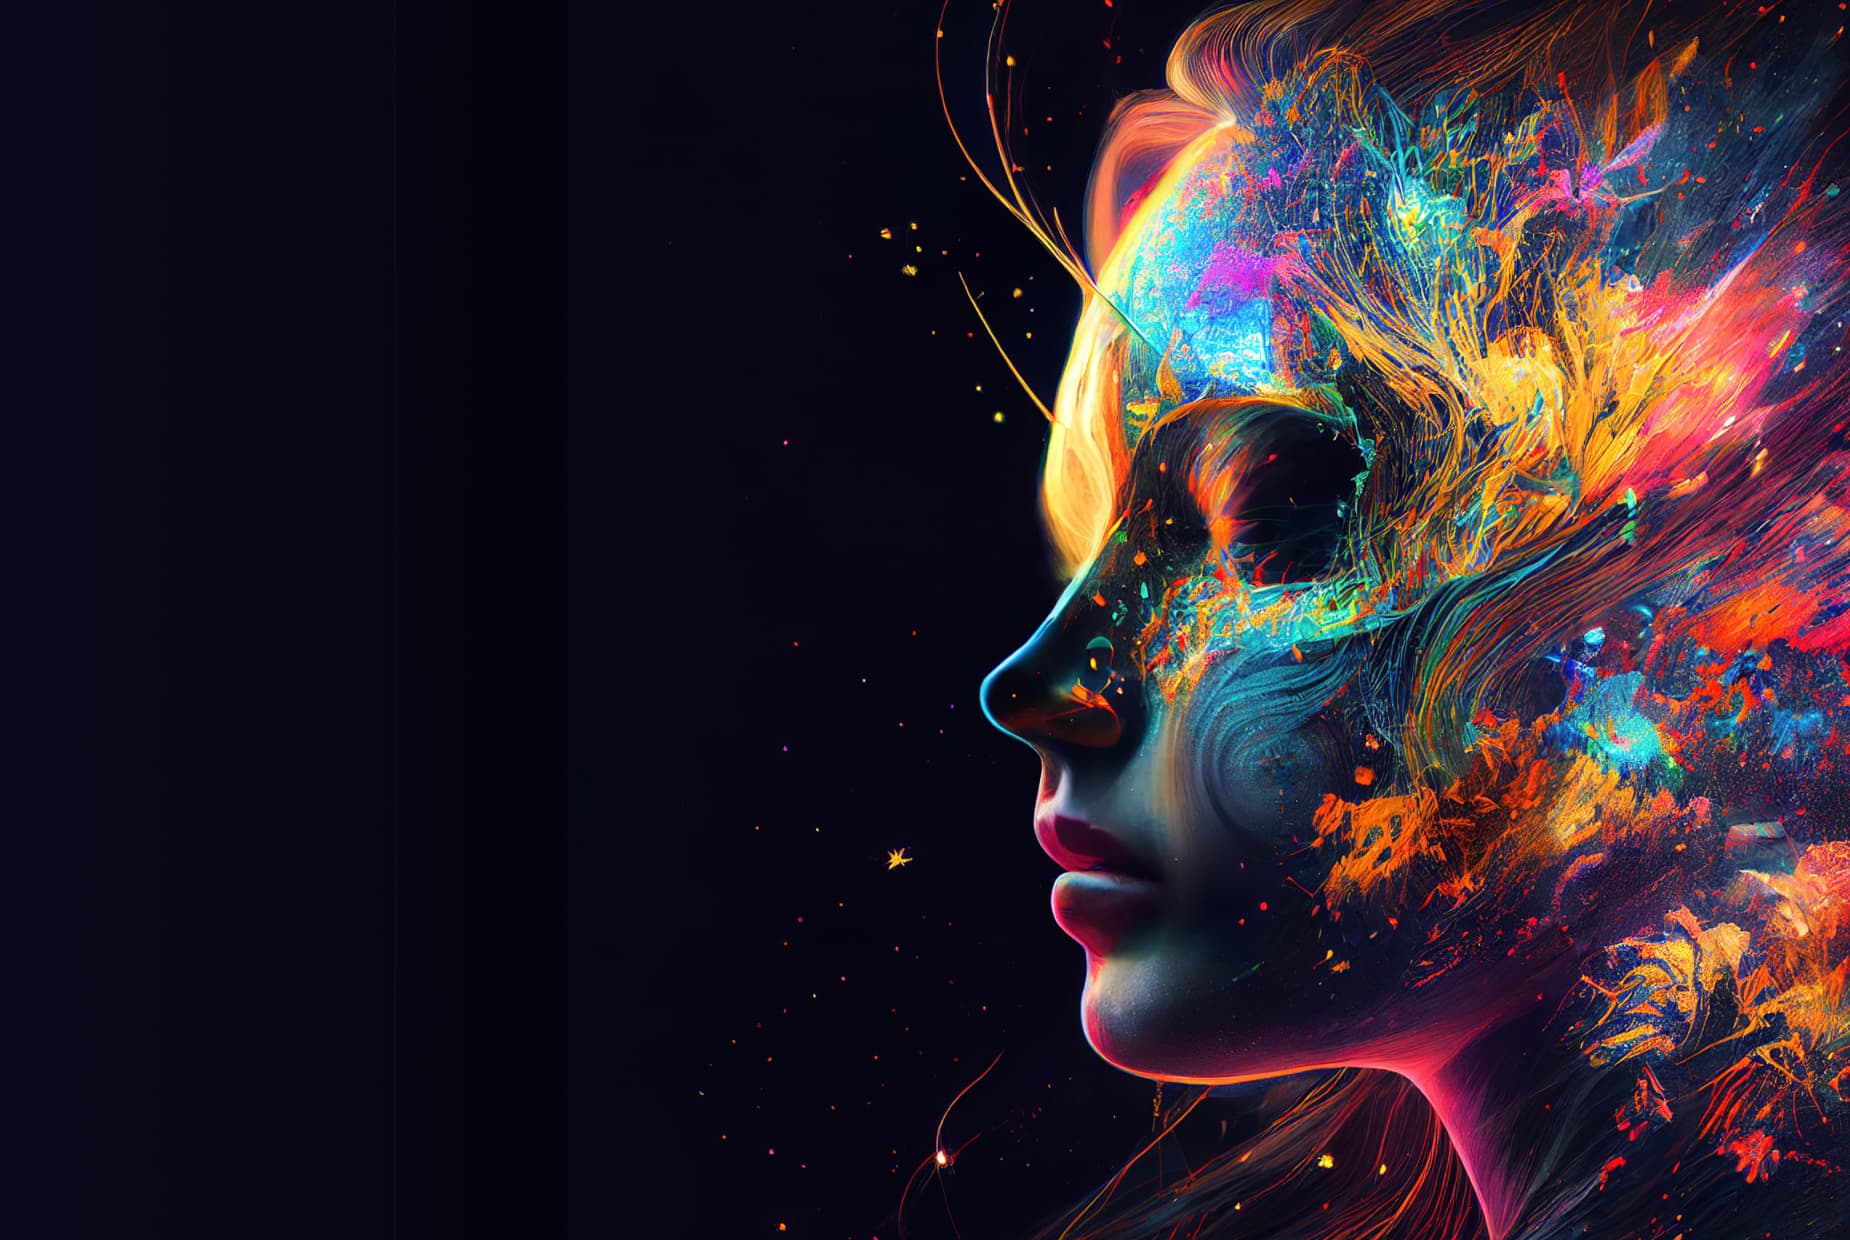 カラフルな抽象アートを含む女性の頭部の AI 生成画像。